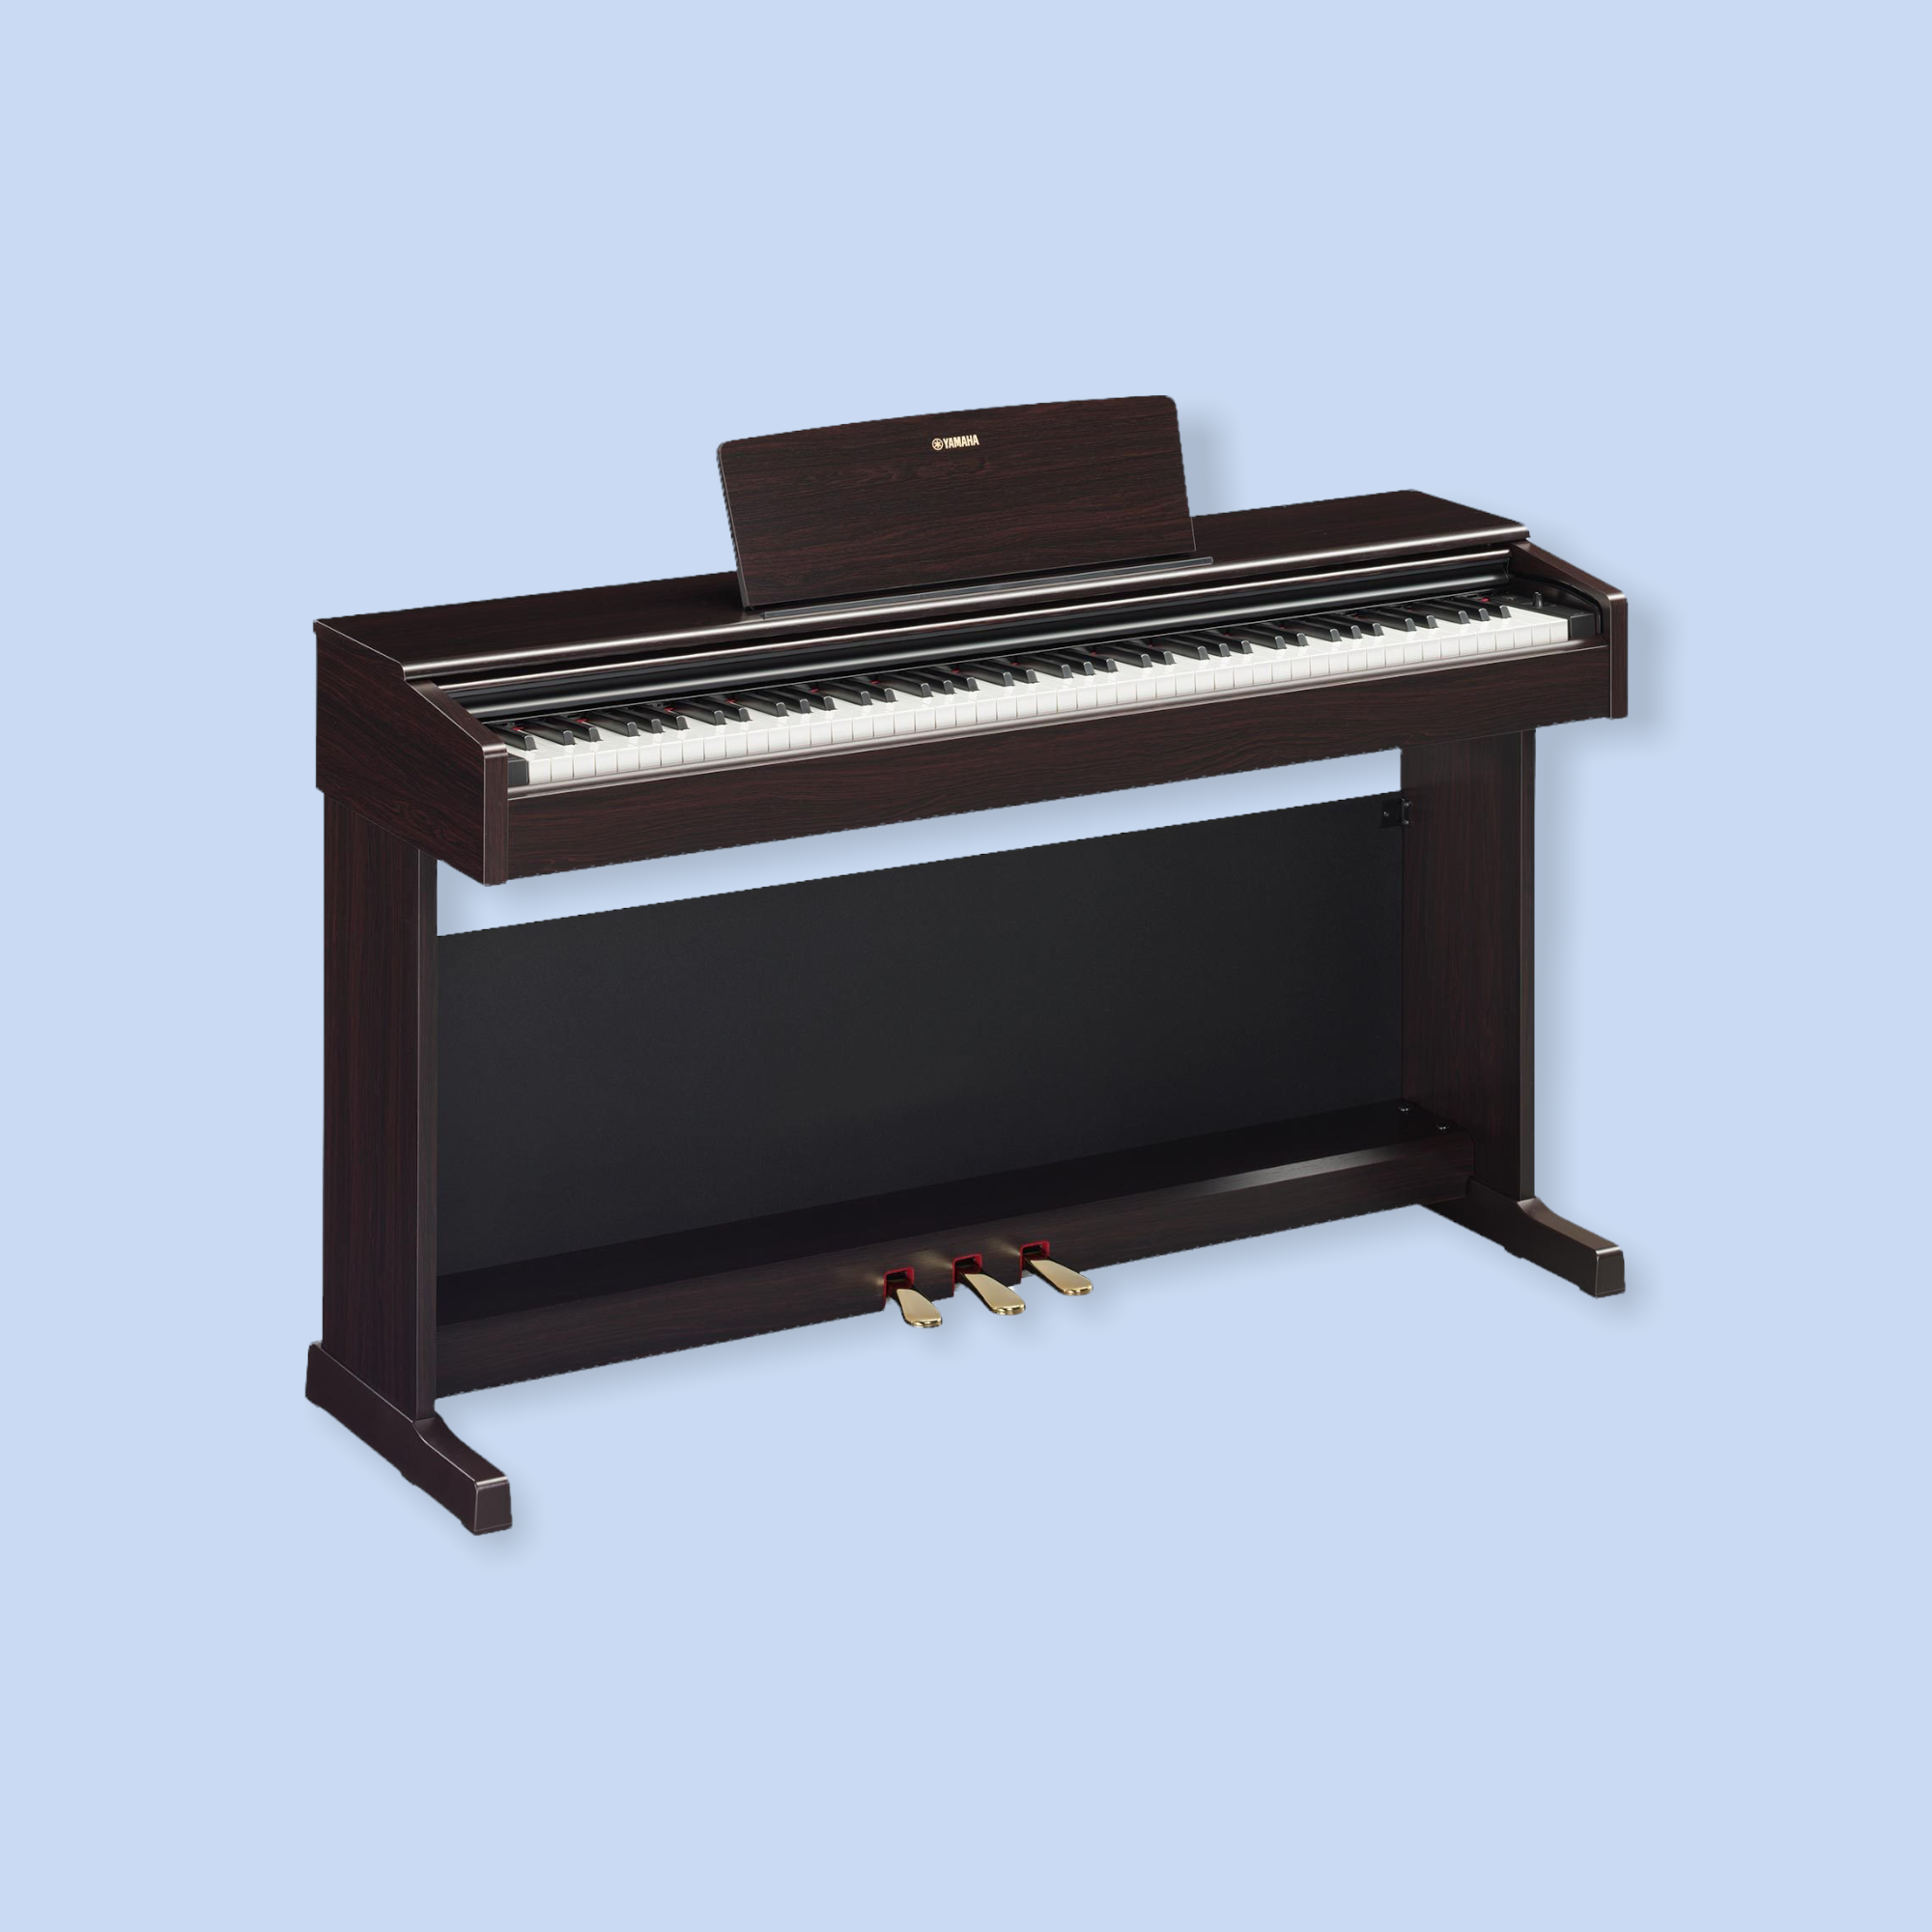 エントリークラスの電子ピアノも台数限定で即納出来ます！
ヤマハの新機種も在庫有！